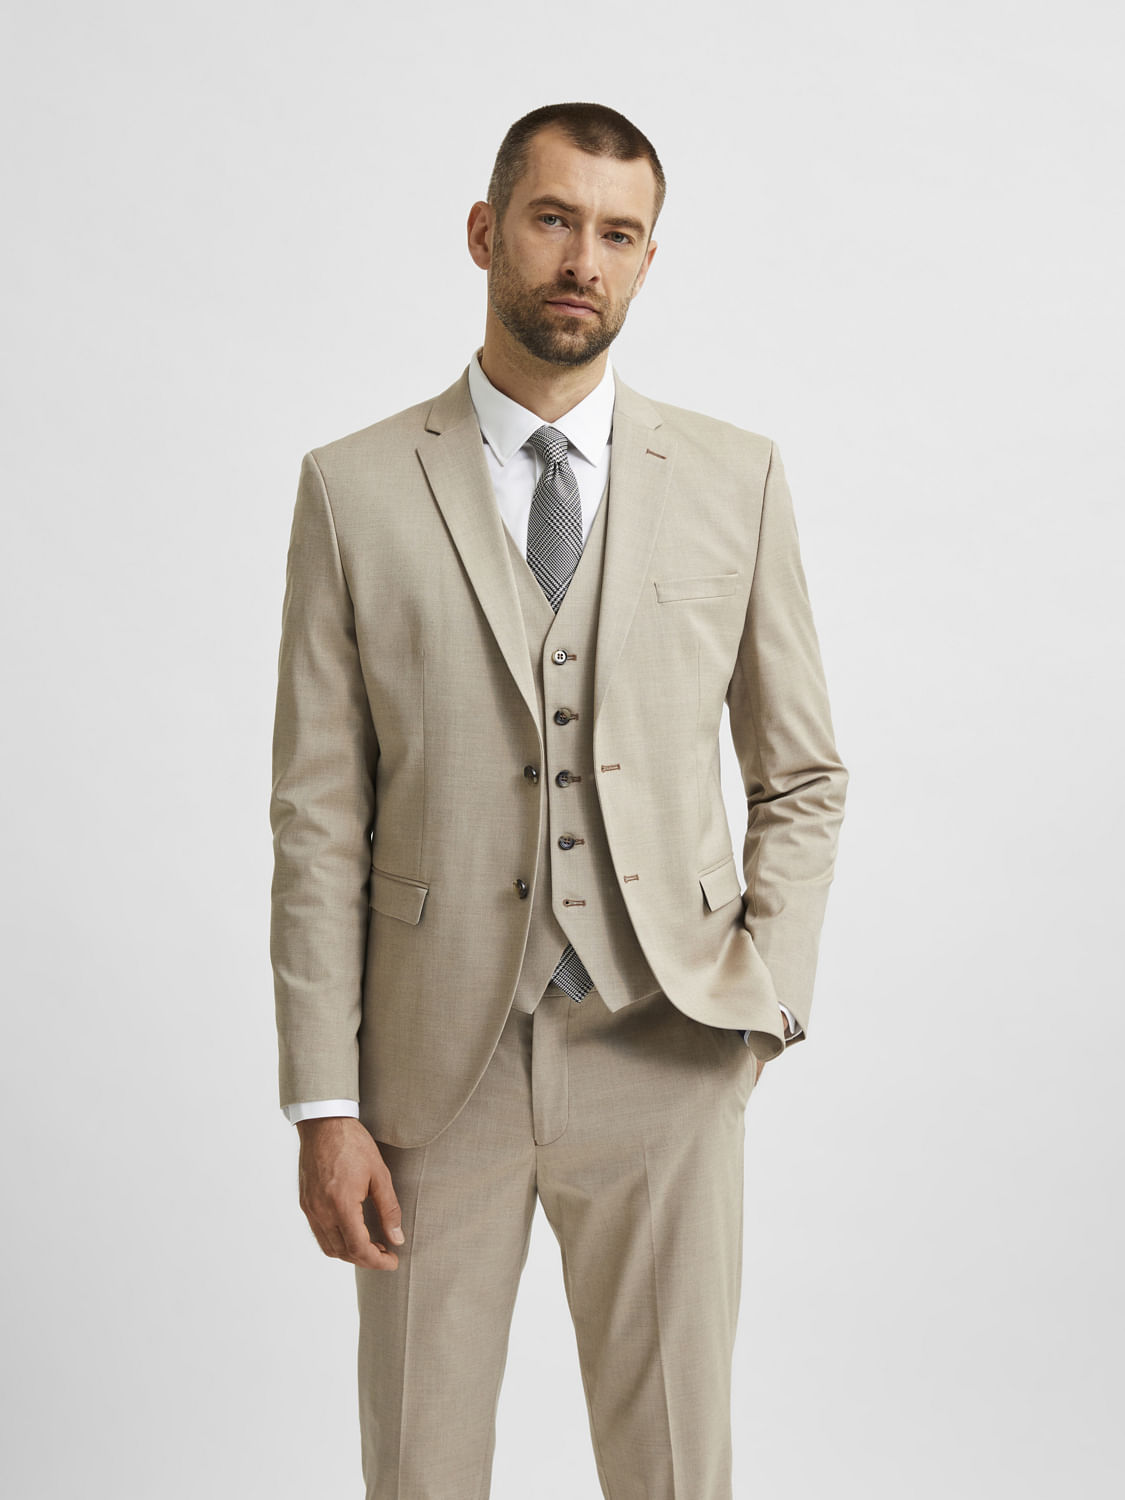 Light Green Blazer Suits for Men slim fit male 3 piece suits wedding d |  Wedding suits men, Slim fit suit men, Green suit men